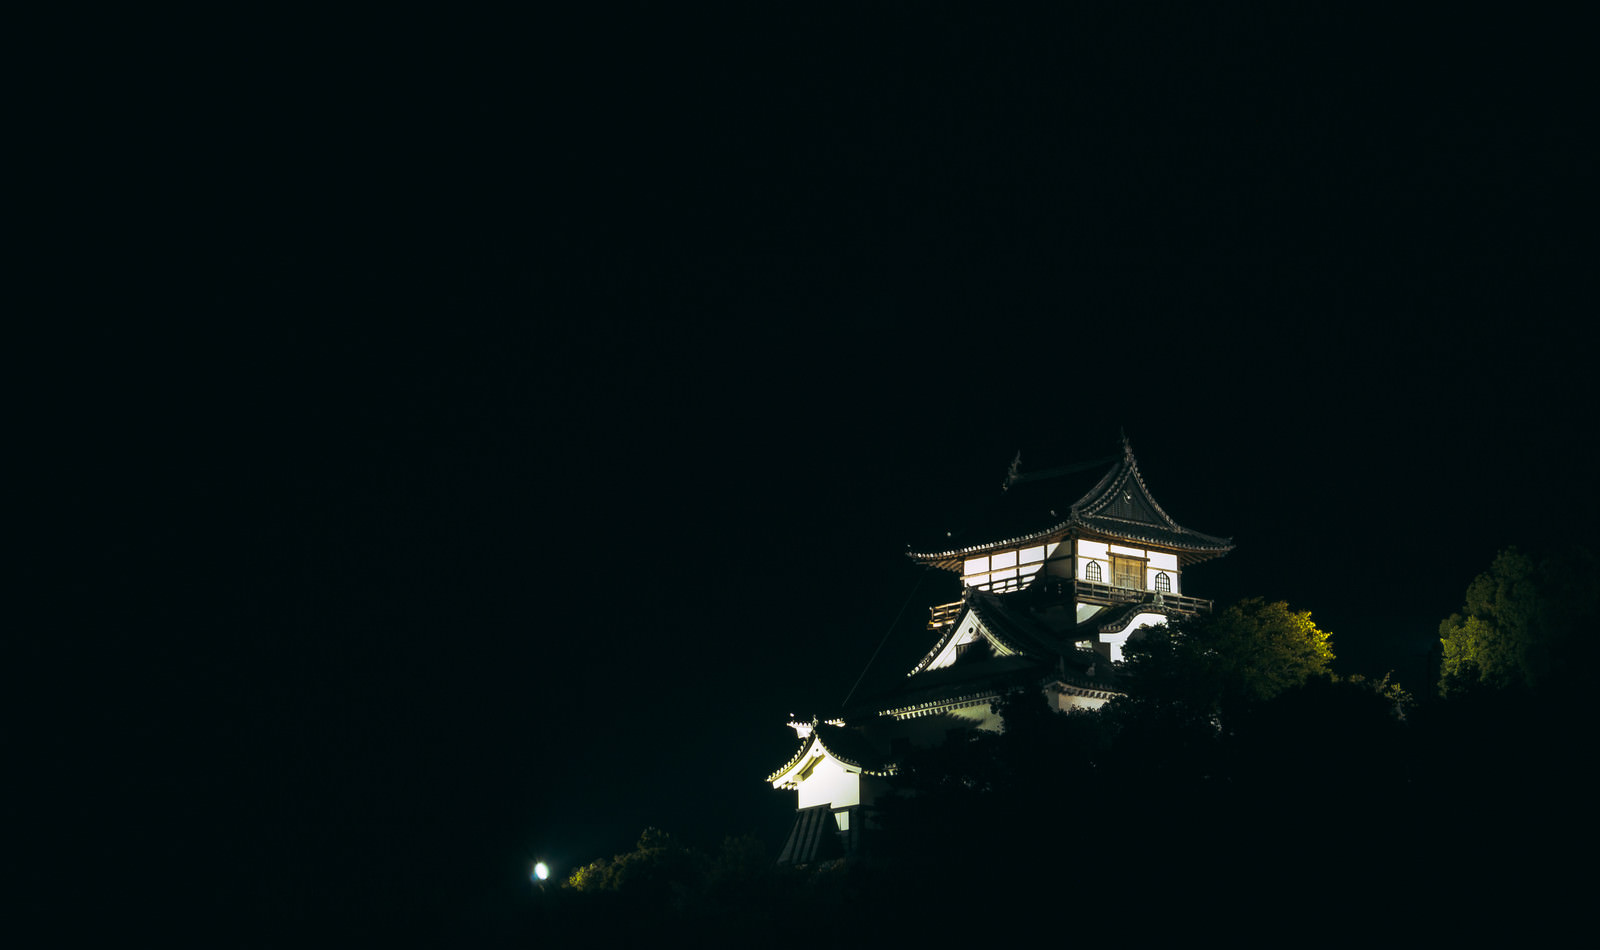 「暗闇と森に囲まれた中ライトアップされて輝く犬山城天守閣」の写真